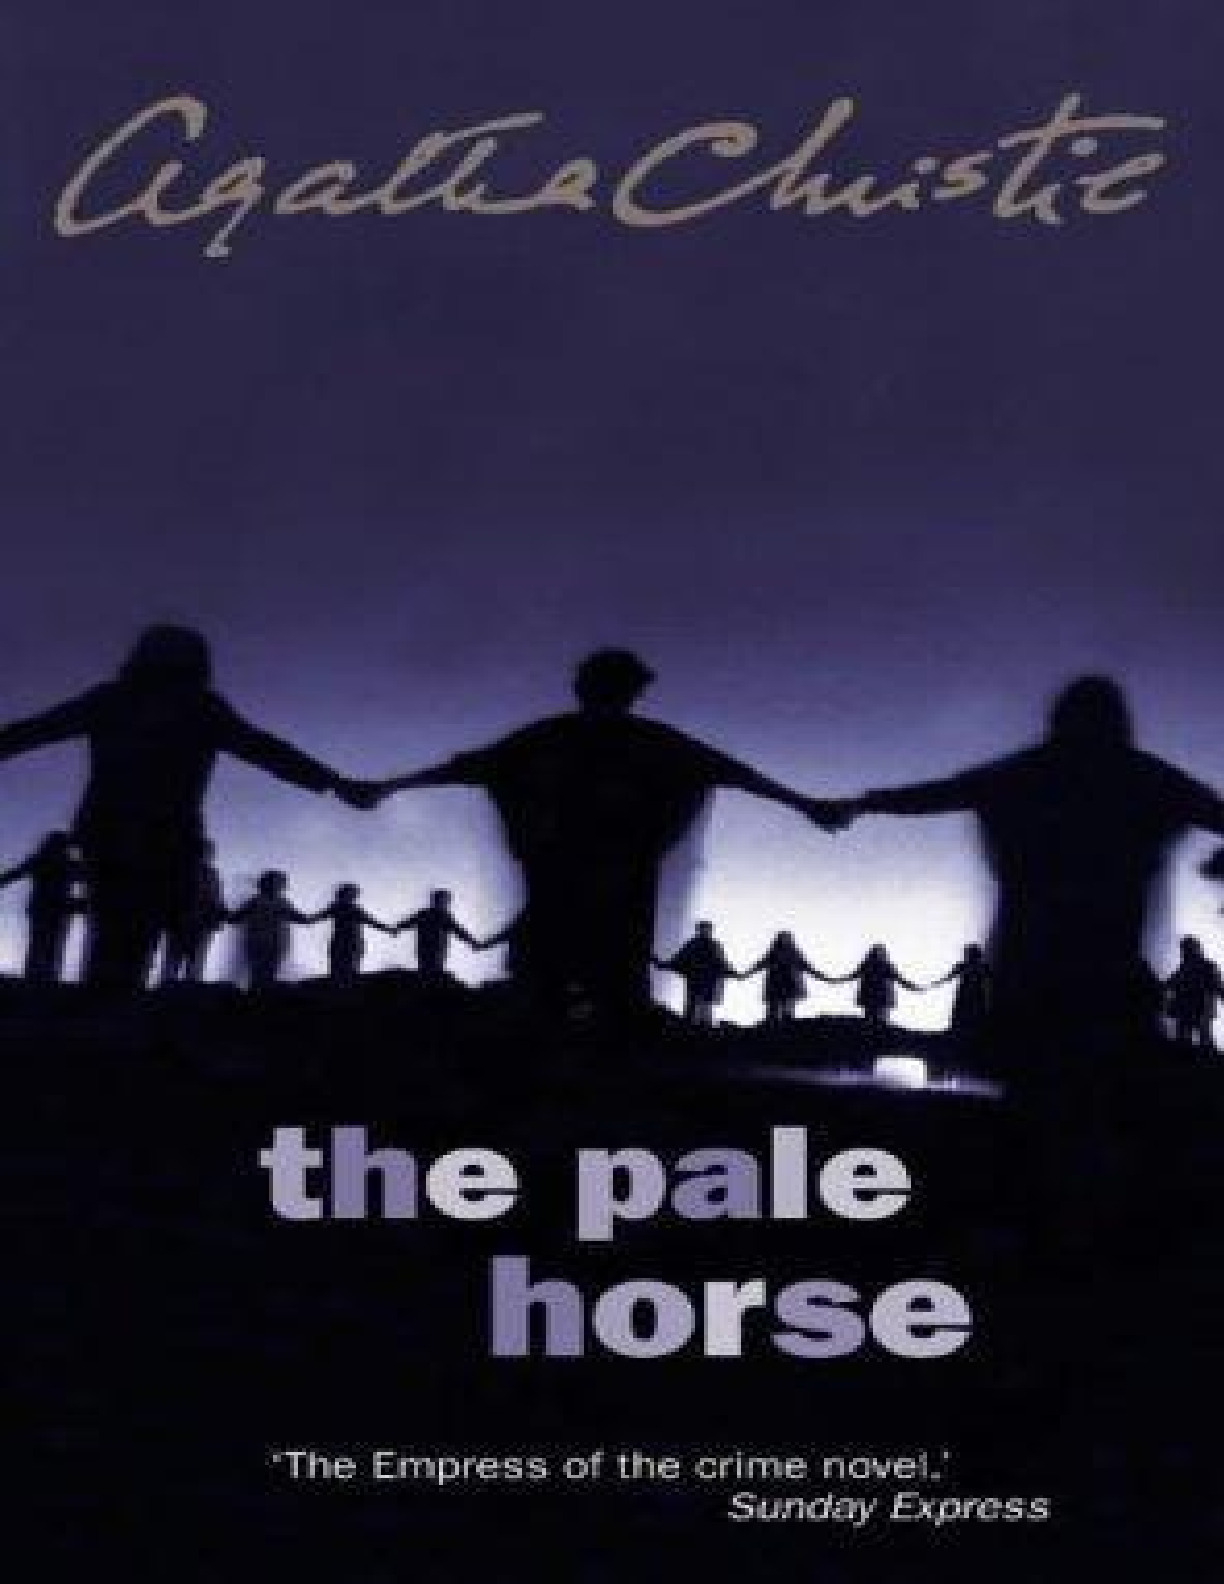 pale horse, The – Agatha Christie